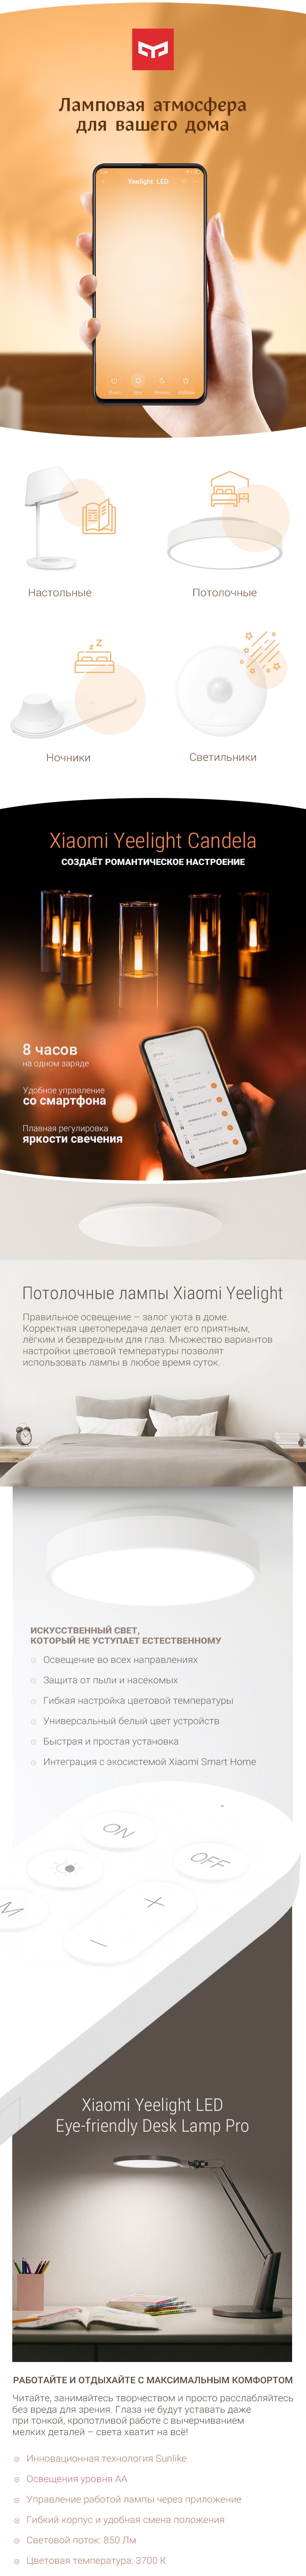 Лампы Xiaomi Yeelight – освещение на любой вкус